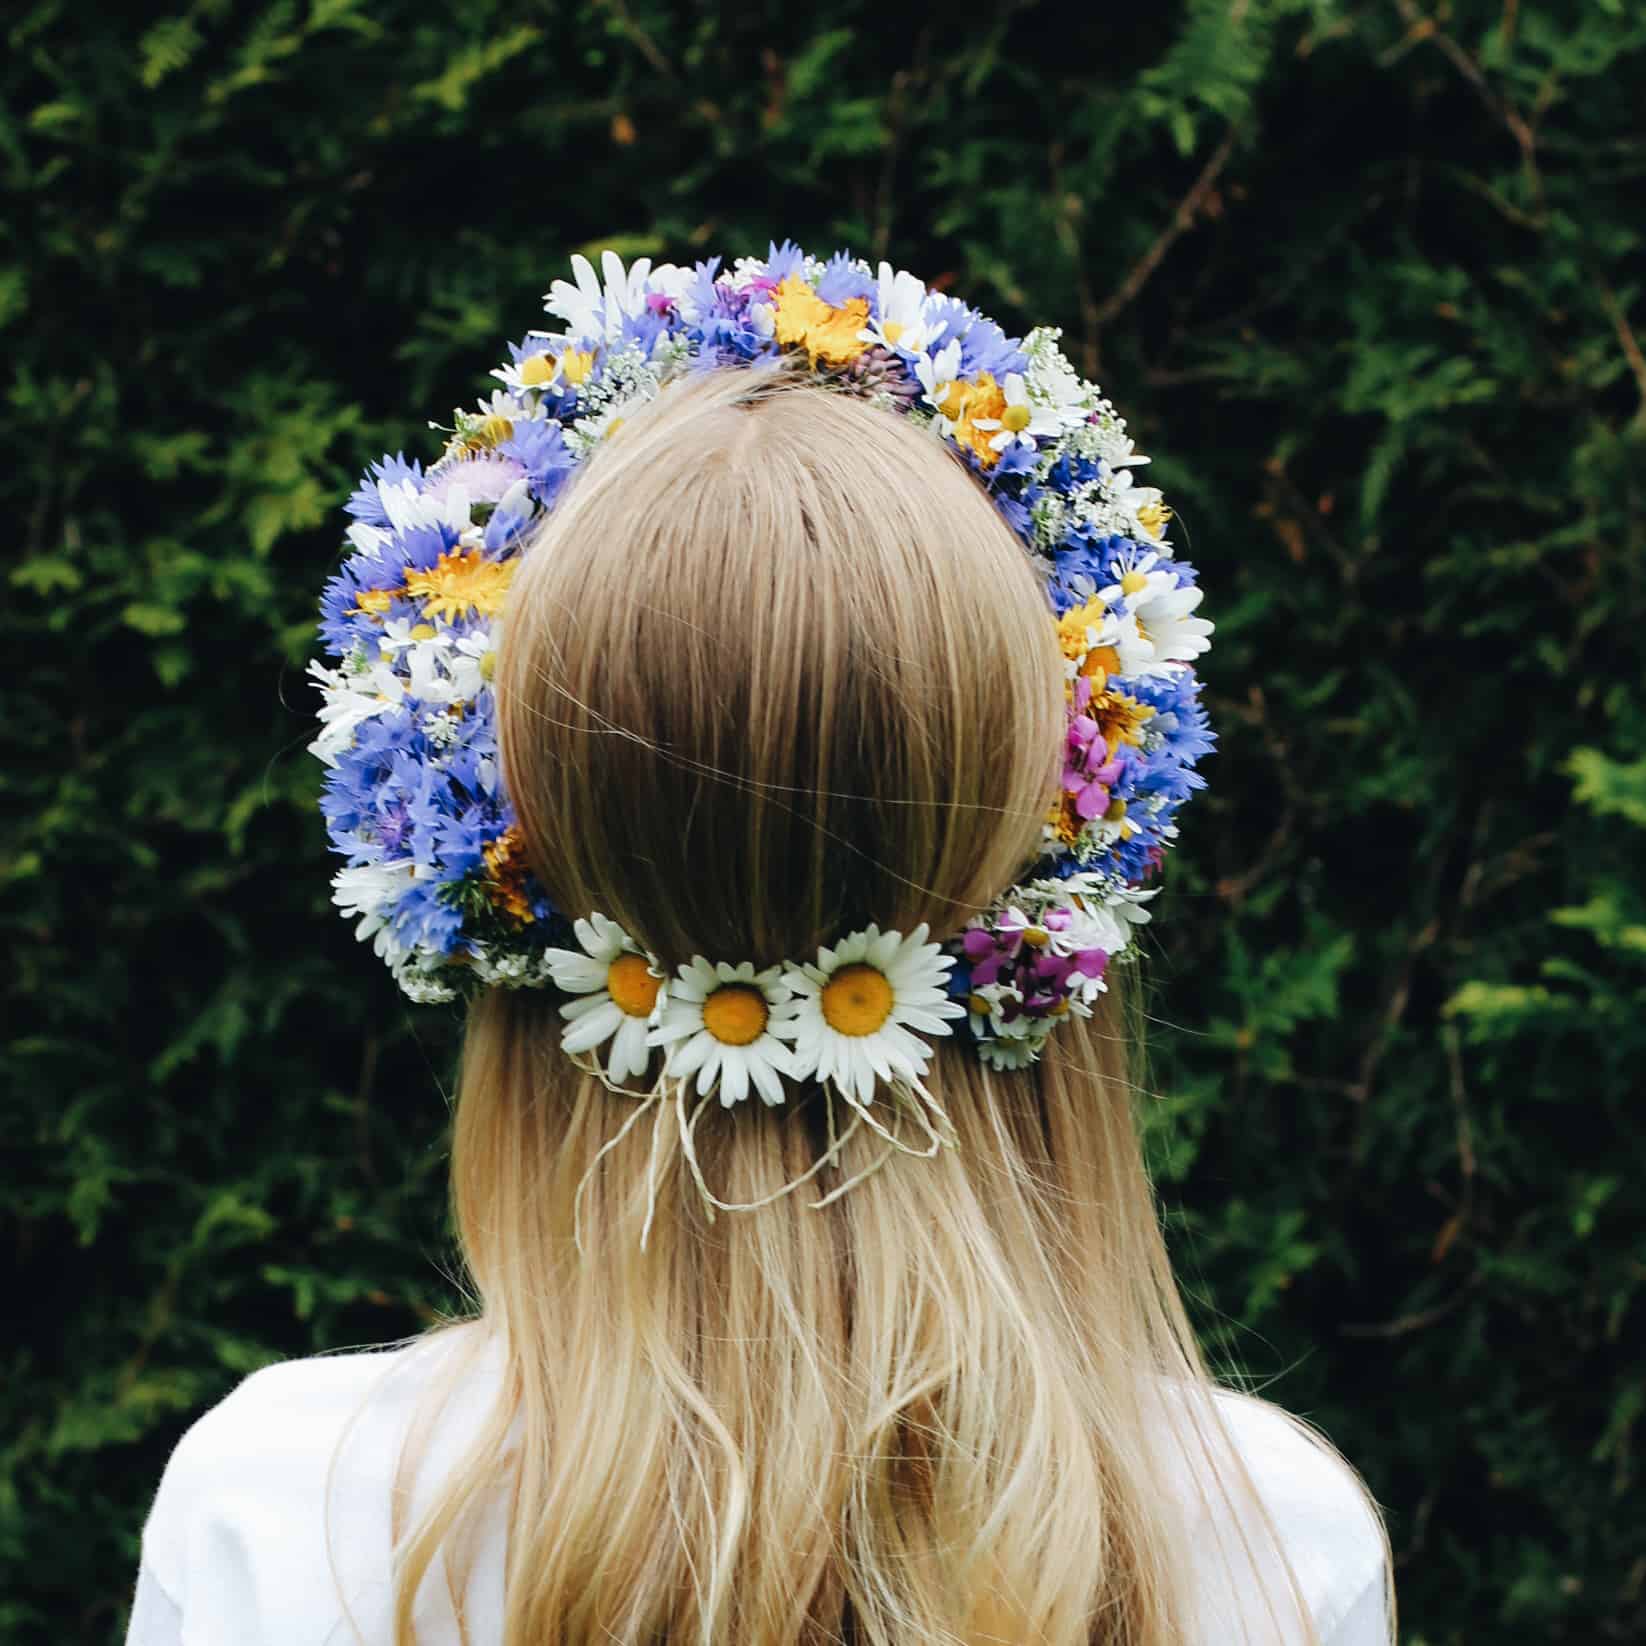 Fertiger Kranz aus bunten Wildblumen auf dem Kopf eines Mädchens.